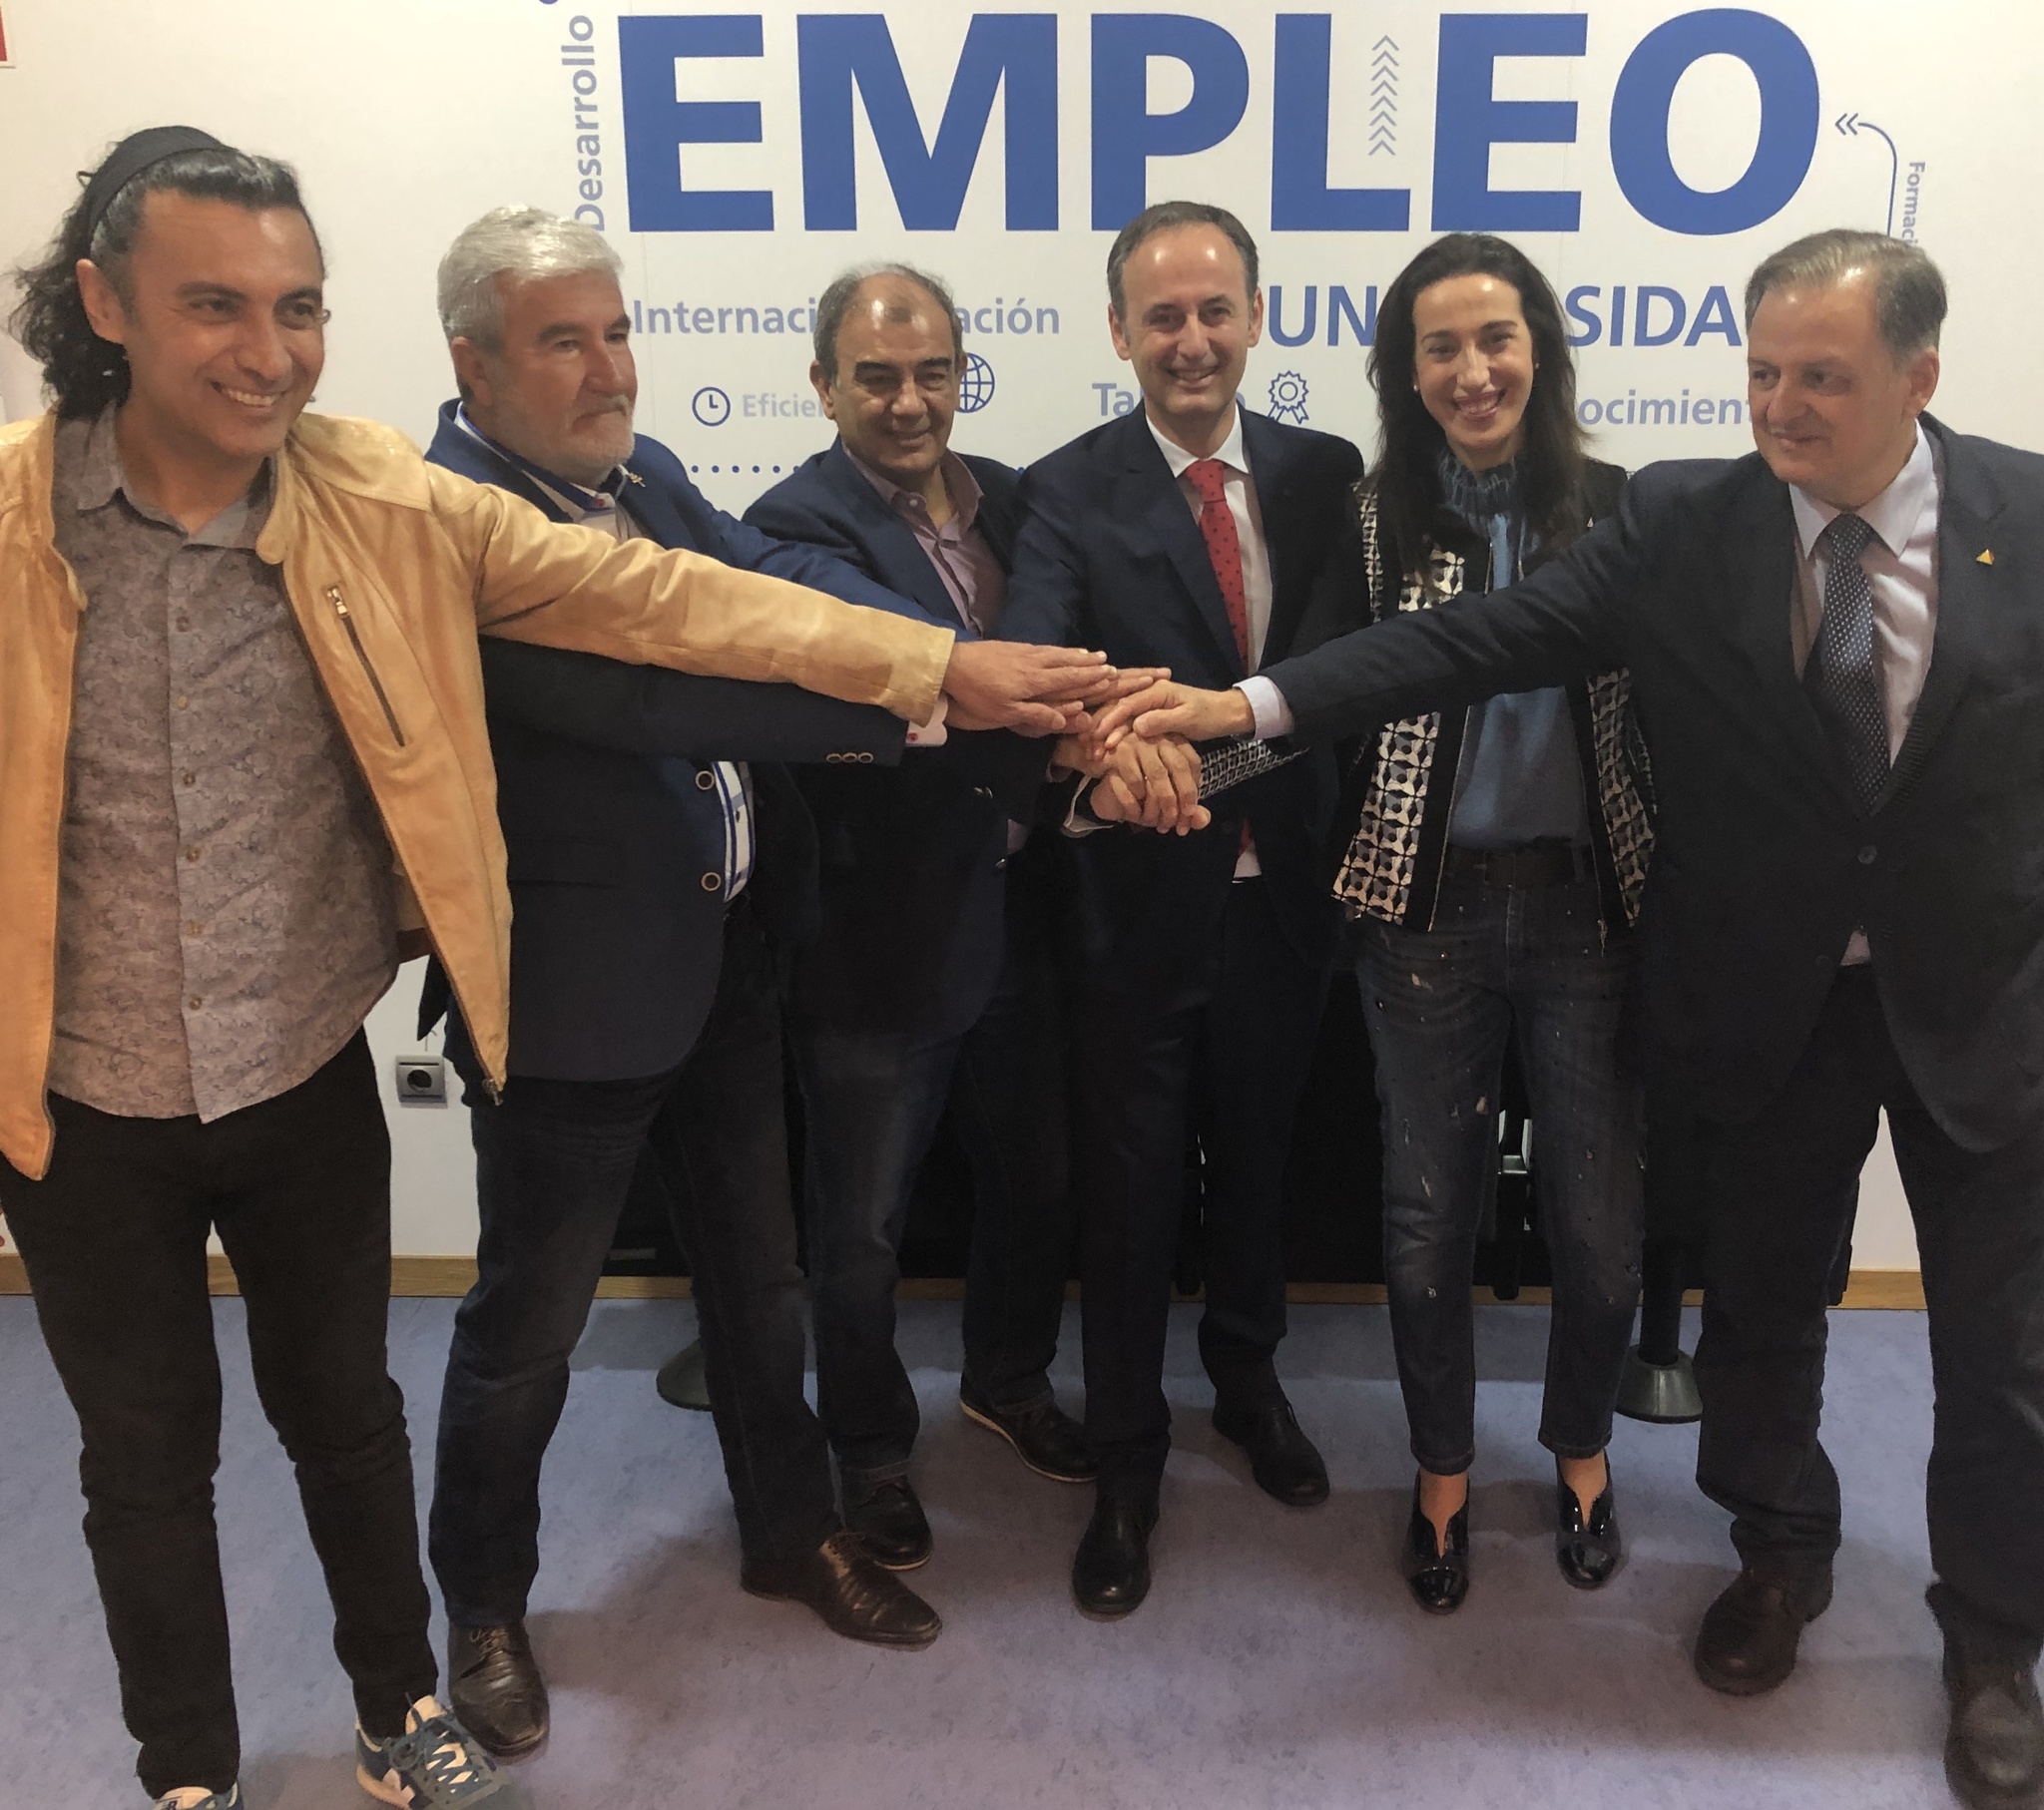 Imagen del consejero de Empleo, Universidades, Empresa y Medio Ambiente, Javier Celdrán, con los representantes de la economía social de la Región de Murcia (I)